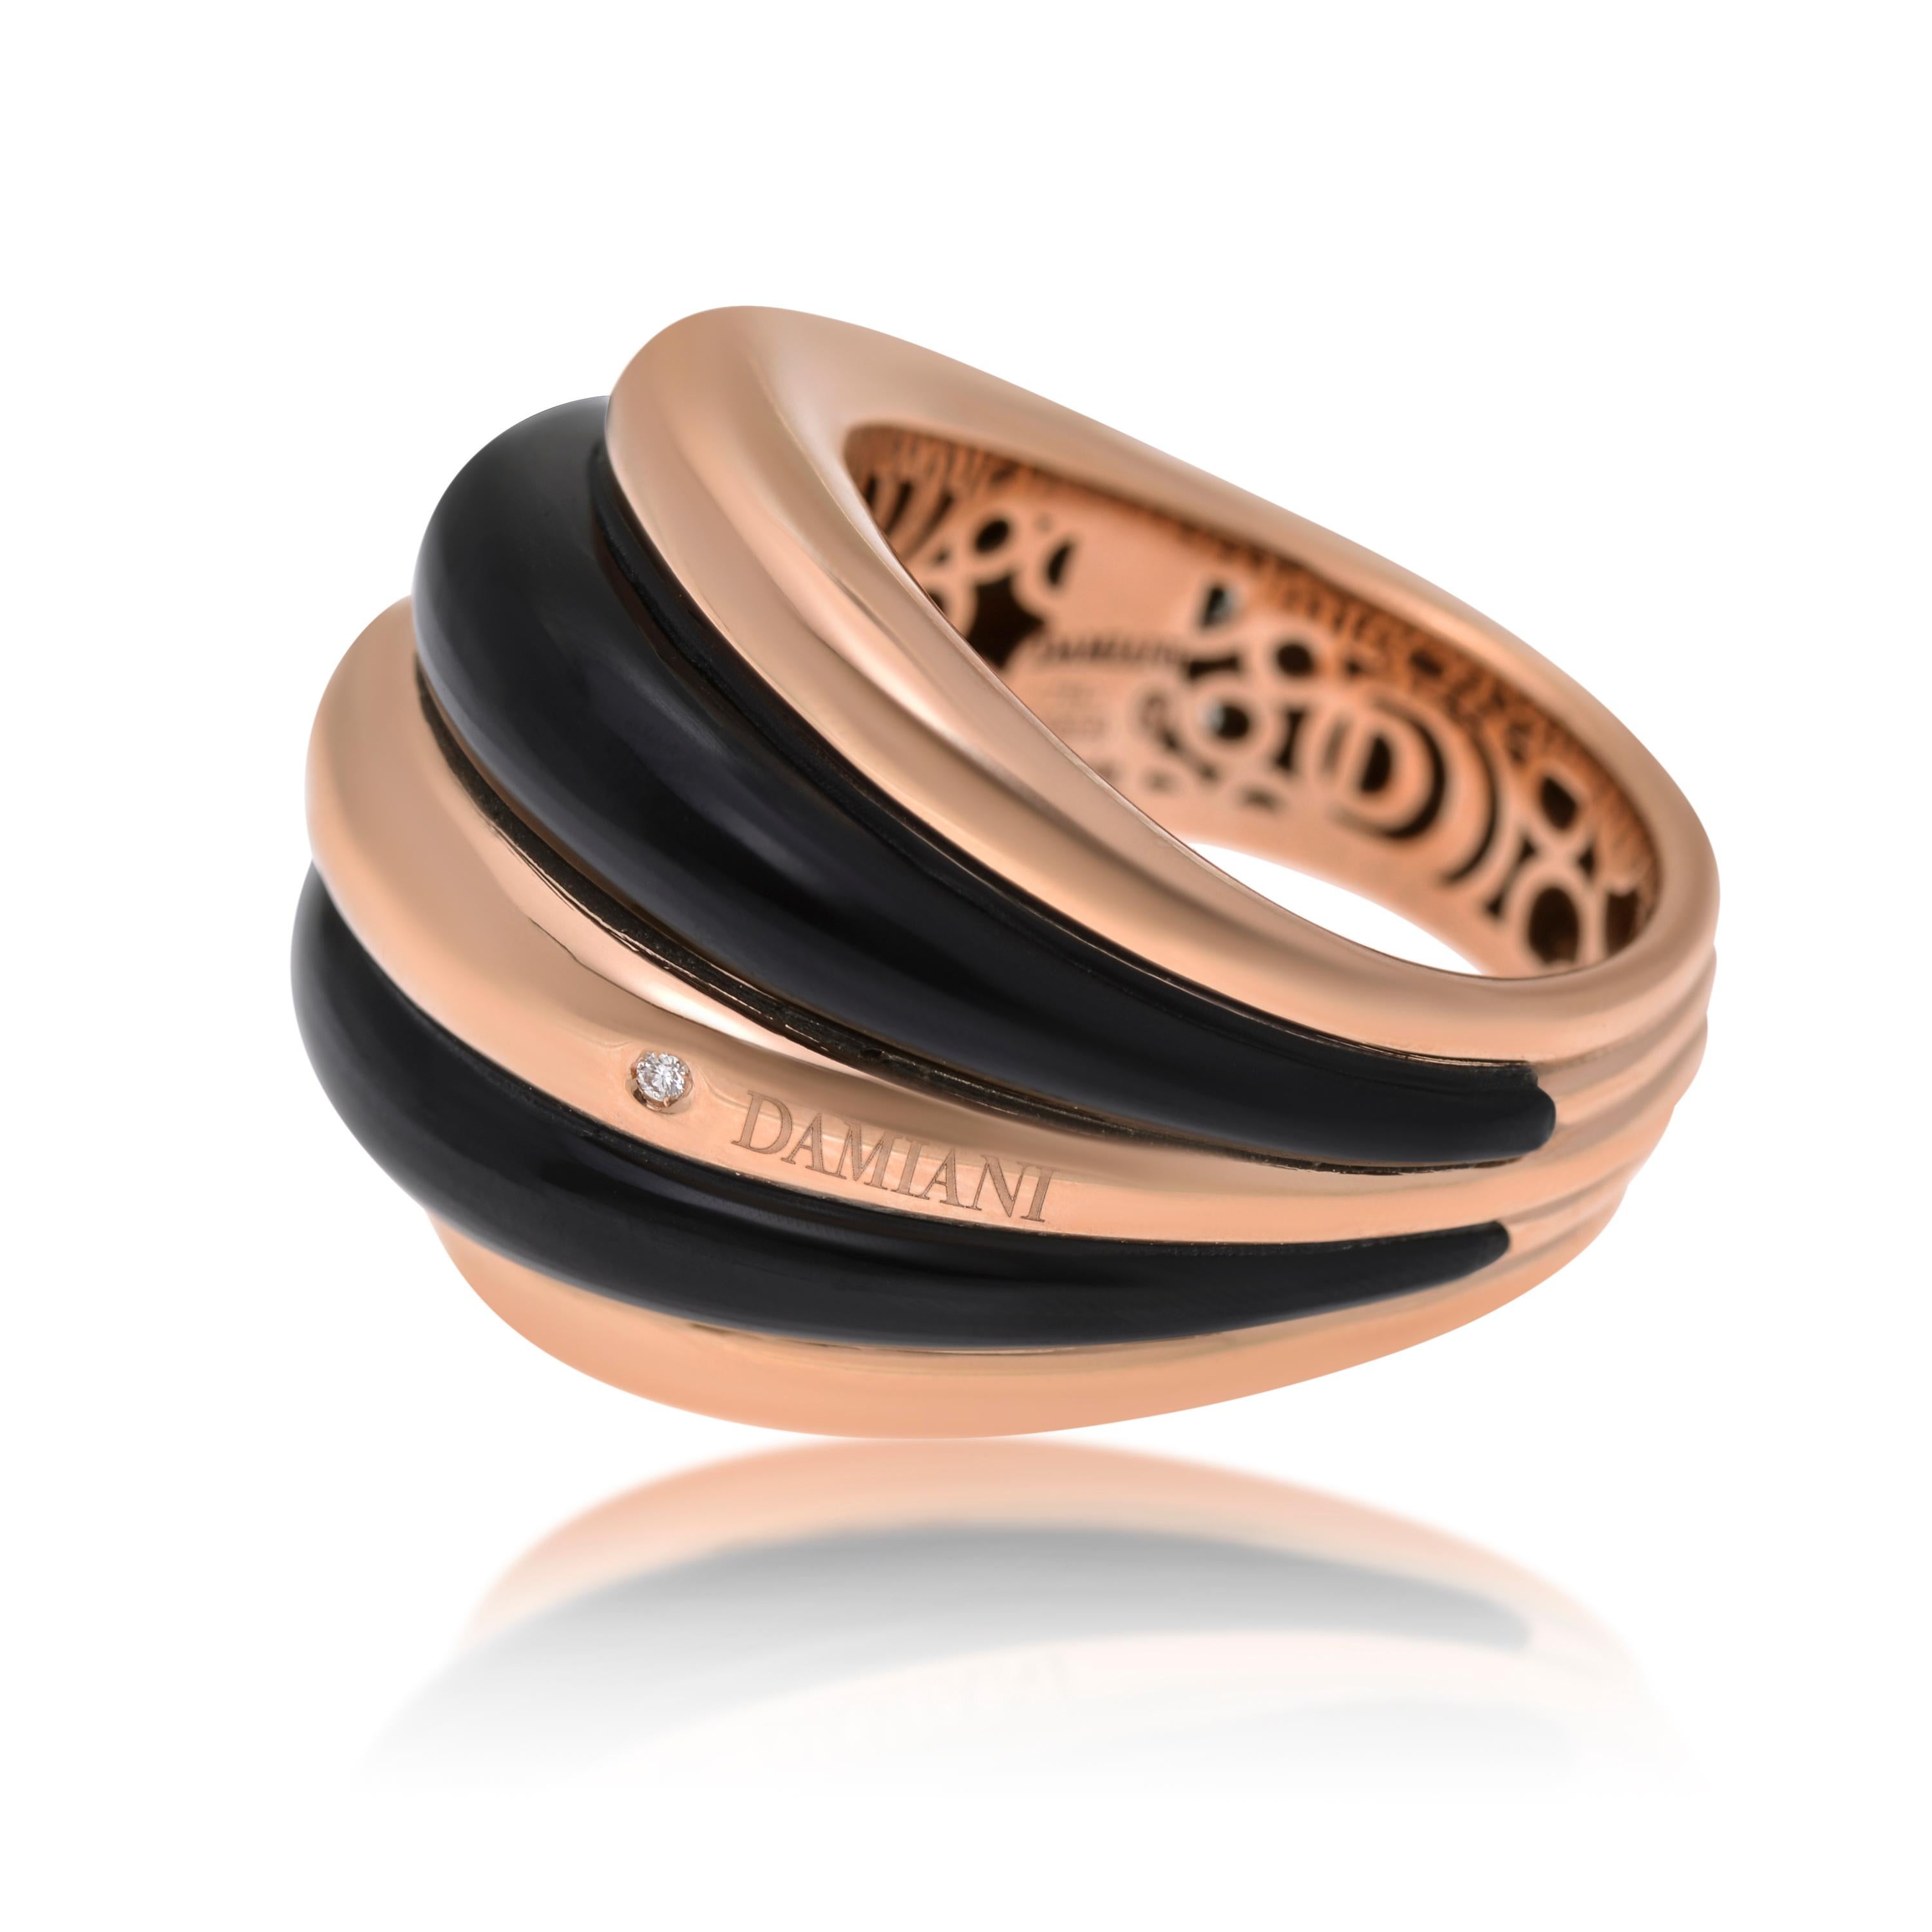 Contemporary Damiani Spicchi di Luna 18K Rose Gold, Onyx & Diamond Dome Ring Sz. 6 For Sale